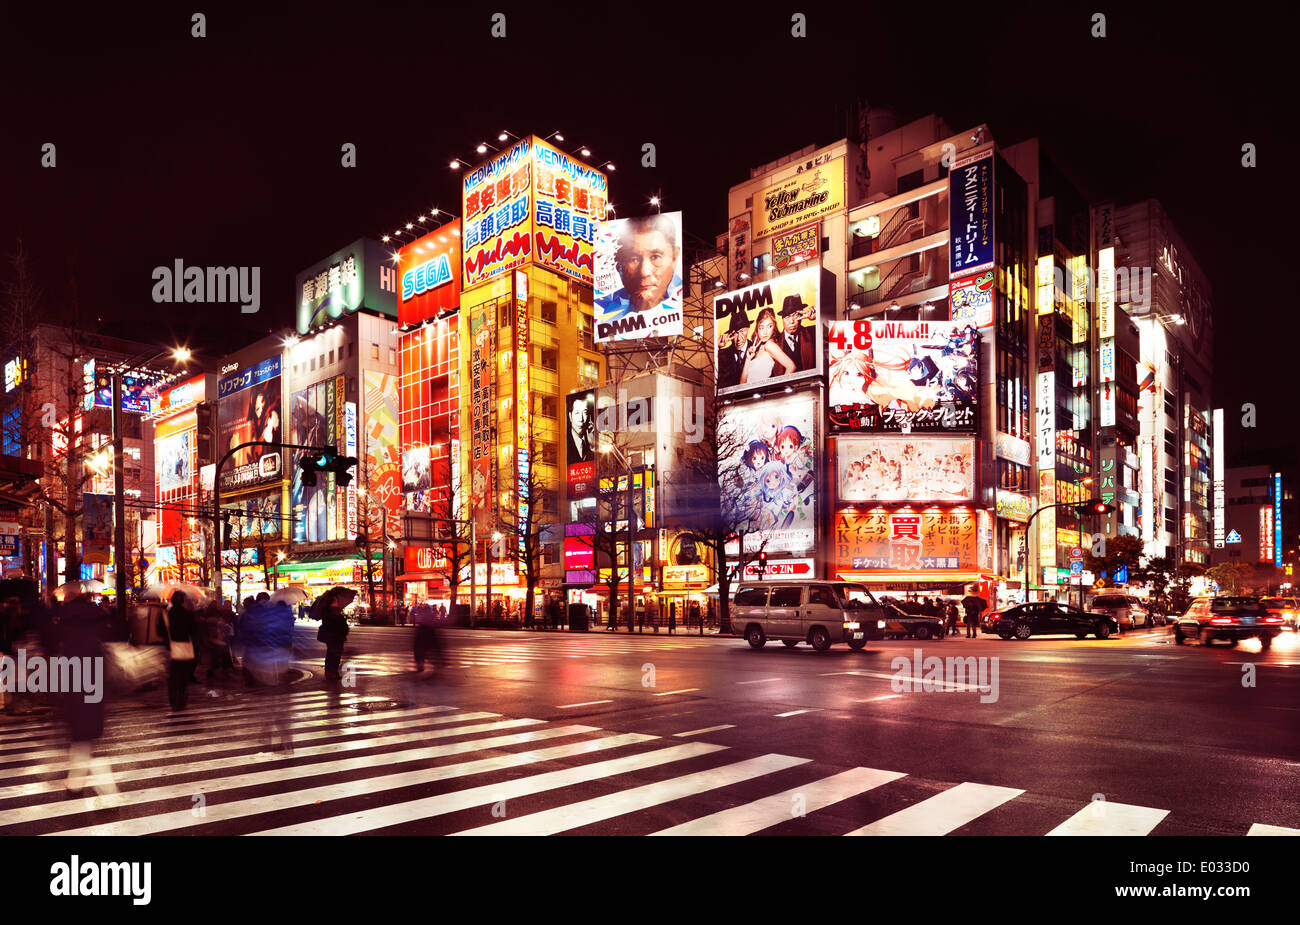 Führerschein erhältlich unter MaximImages.com - Akihabara Straßen mit leuchtenden bunten Schildern bei Nacht in Tokio, Japan. Stockfoto